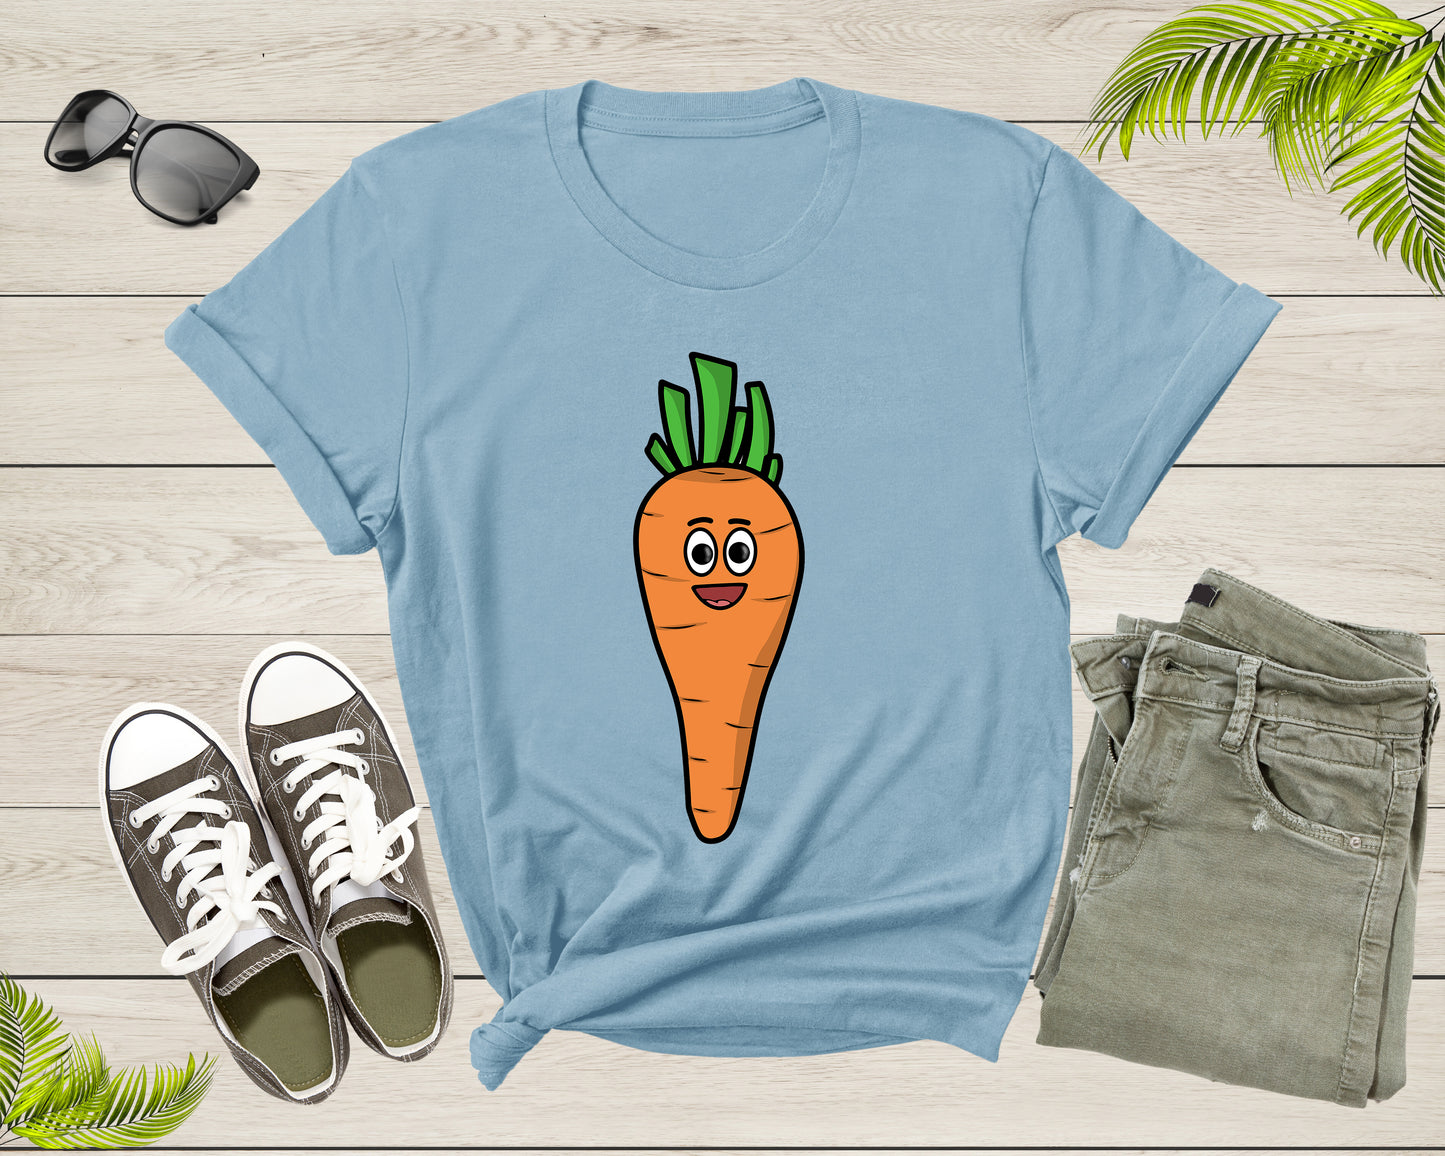 Funny Carrot Lover Gift Shirt Carrot Graphic Design Tshirt For Men Women Kids Boys Girls Carrot Themed Gift Ideas Birthday Present T-shirt